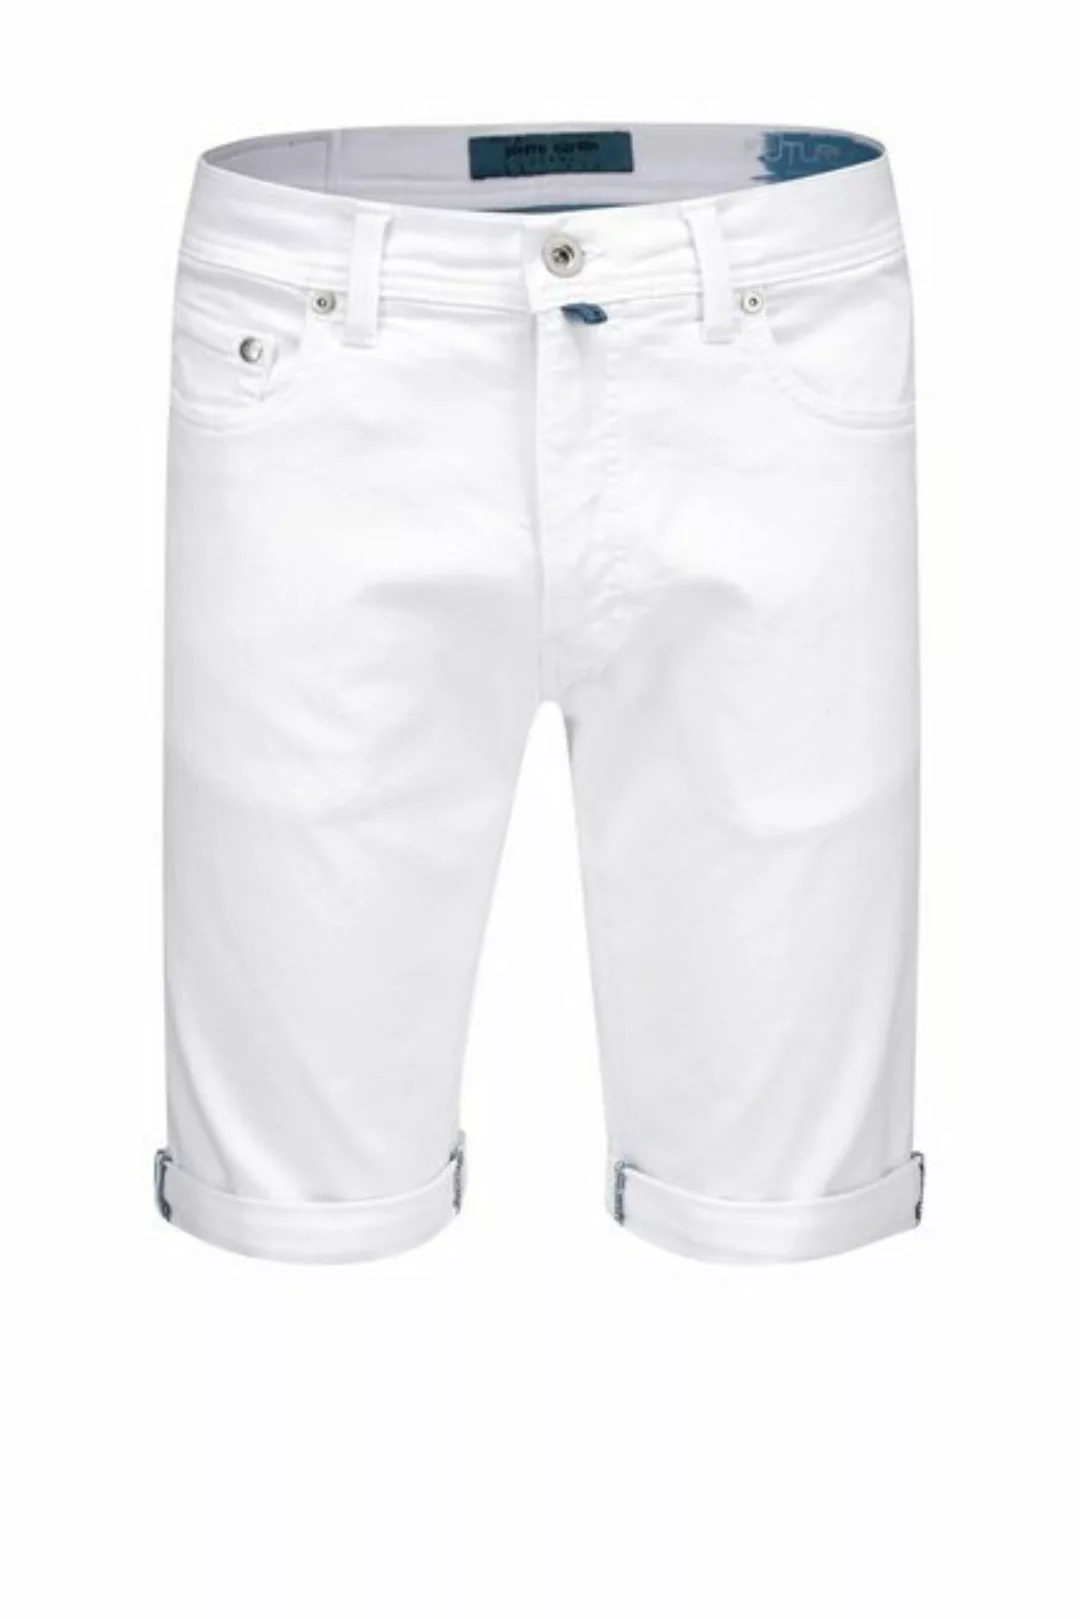 Pierre Cardin 5-Pocket-Jeans PIERRE CARDIN FUTUREFLEX SHORTS white 3452 888 günstig online kaufen